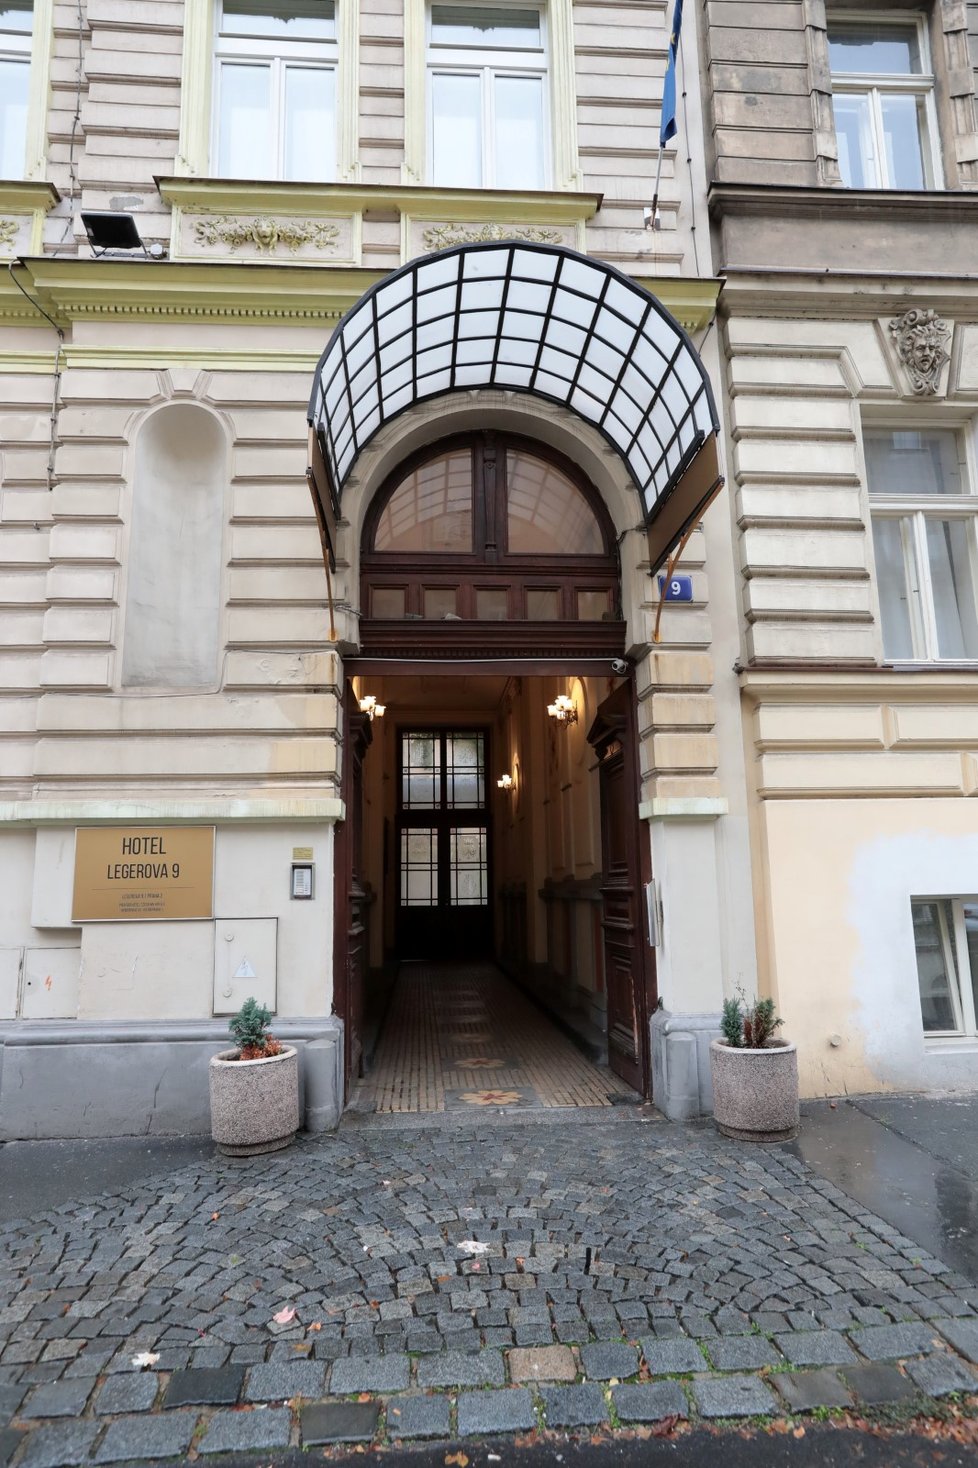 V Praze se otevřel první hotel, který je určený pouze pro lidi nakažené nemocí covid-19. Mohou v něm strávit karanténu, aniž by se fyzicky potkali s někým z personálu.